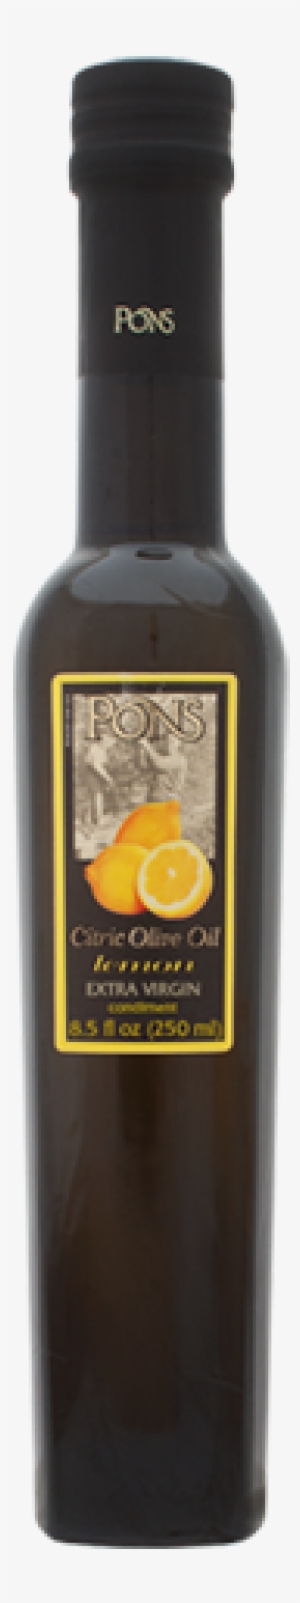 Citric-lemon - Oil